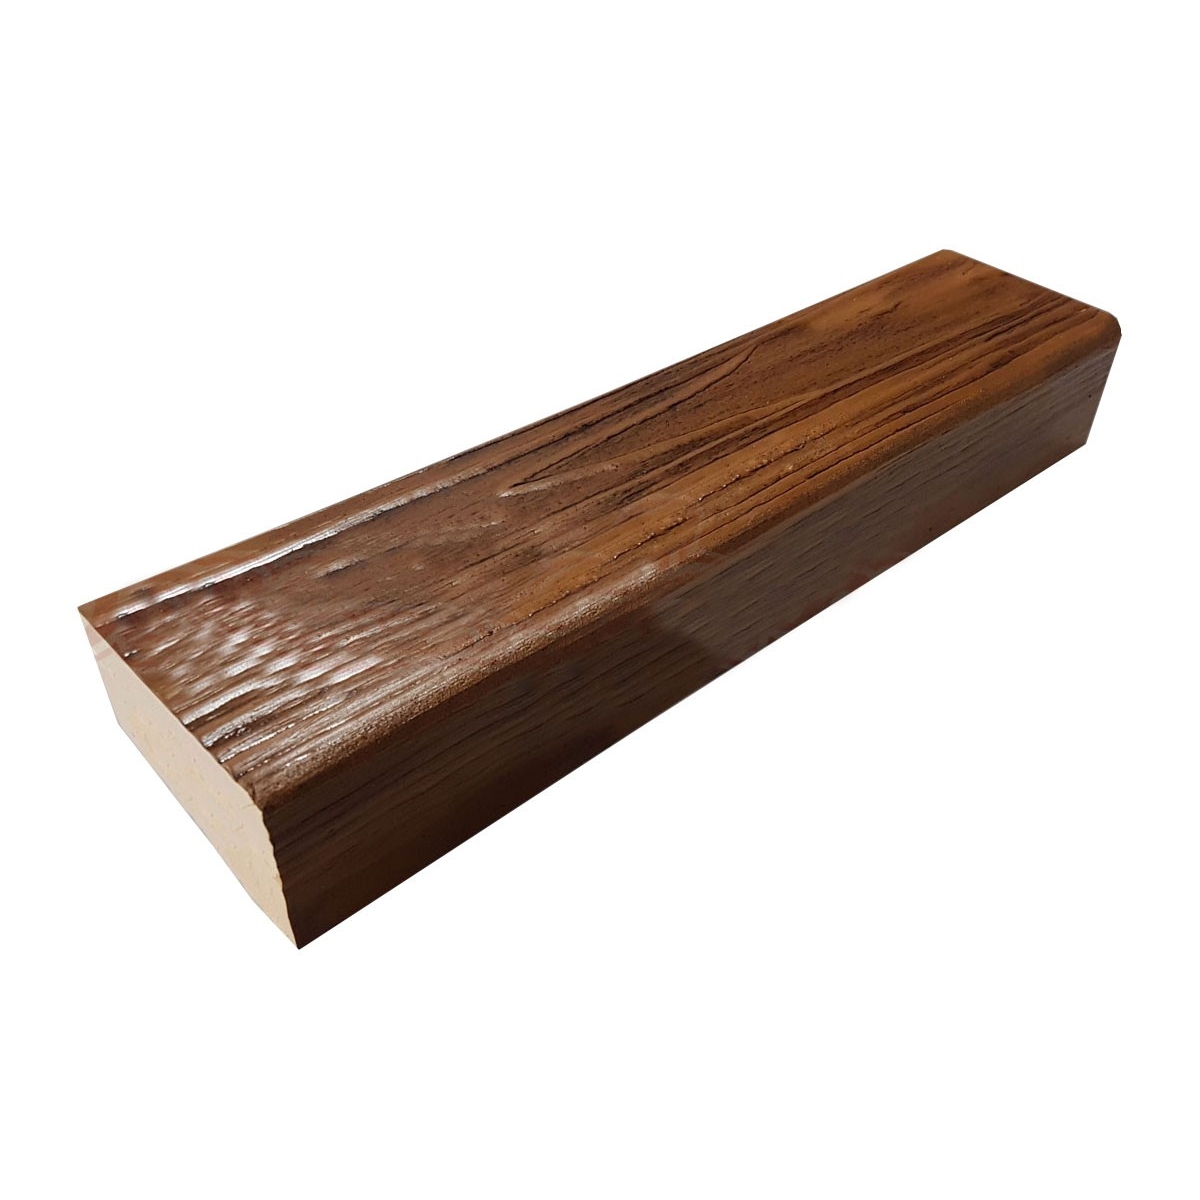 Viga imitación a madera fabricada en poliestireno extruido de 7X5x260 